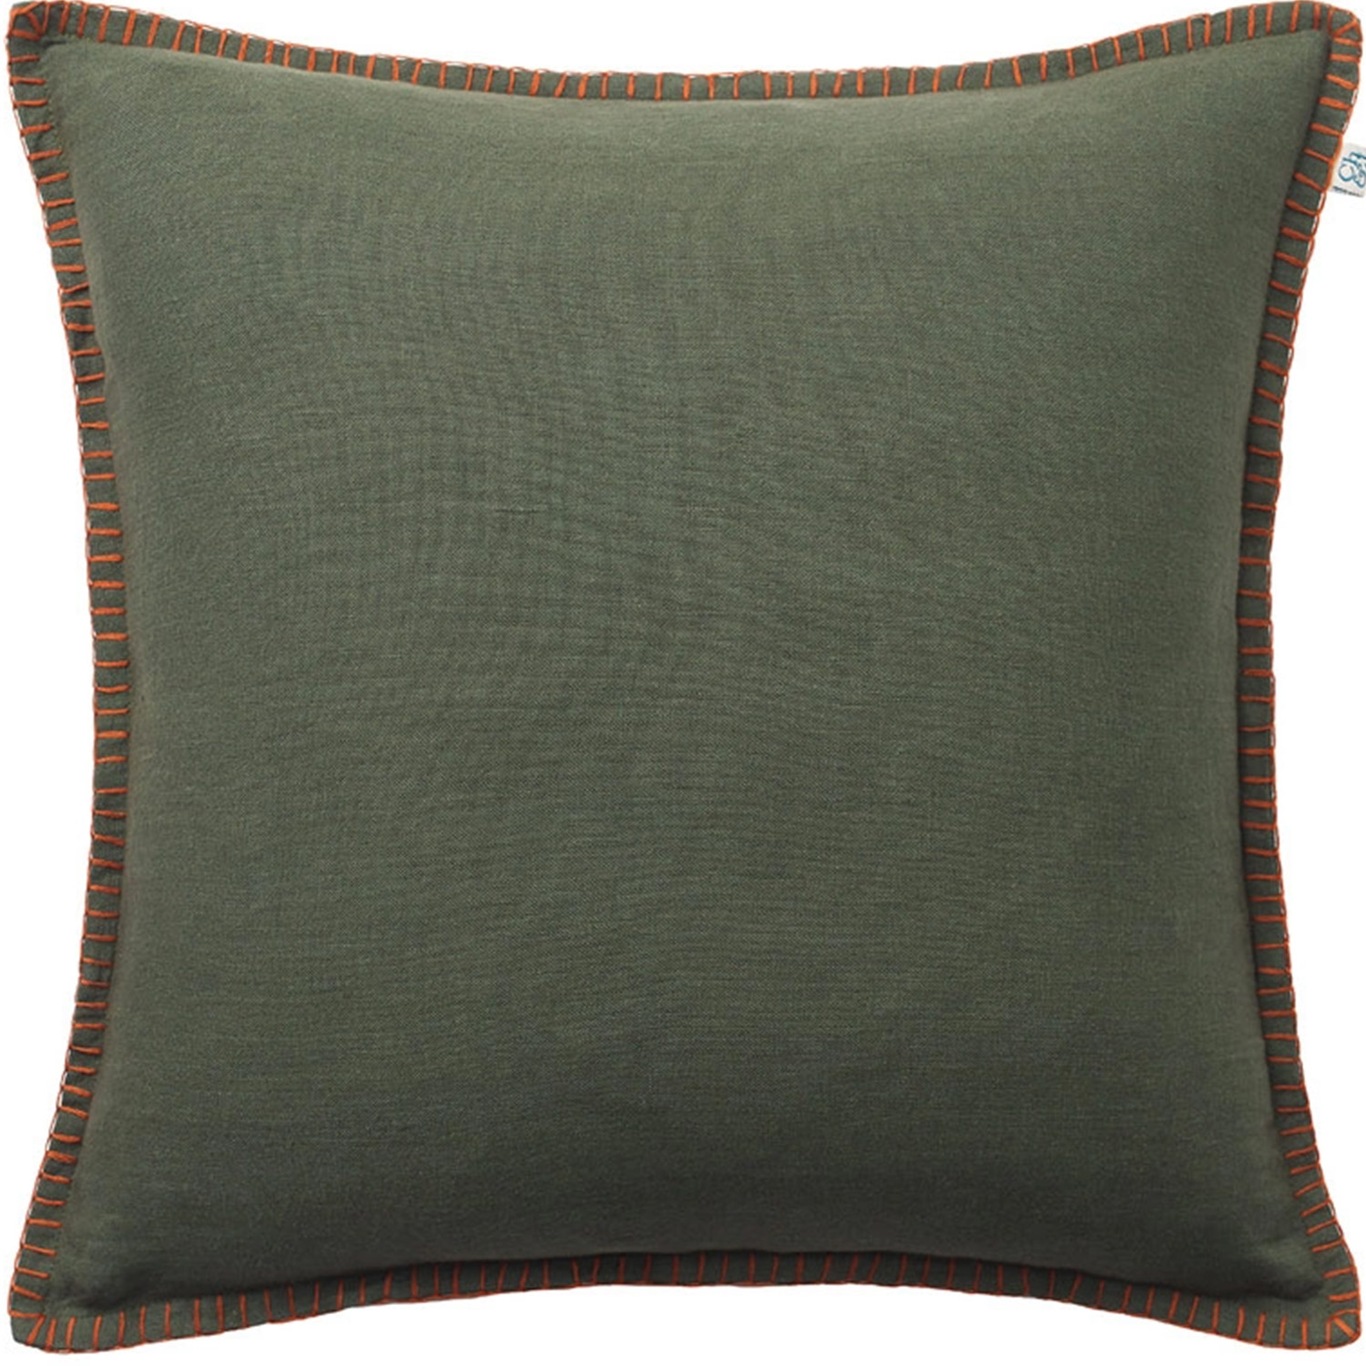 Arun Cushion Cover Terracotta/Forest Green, 50x50 cm